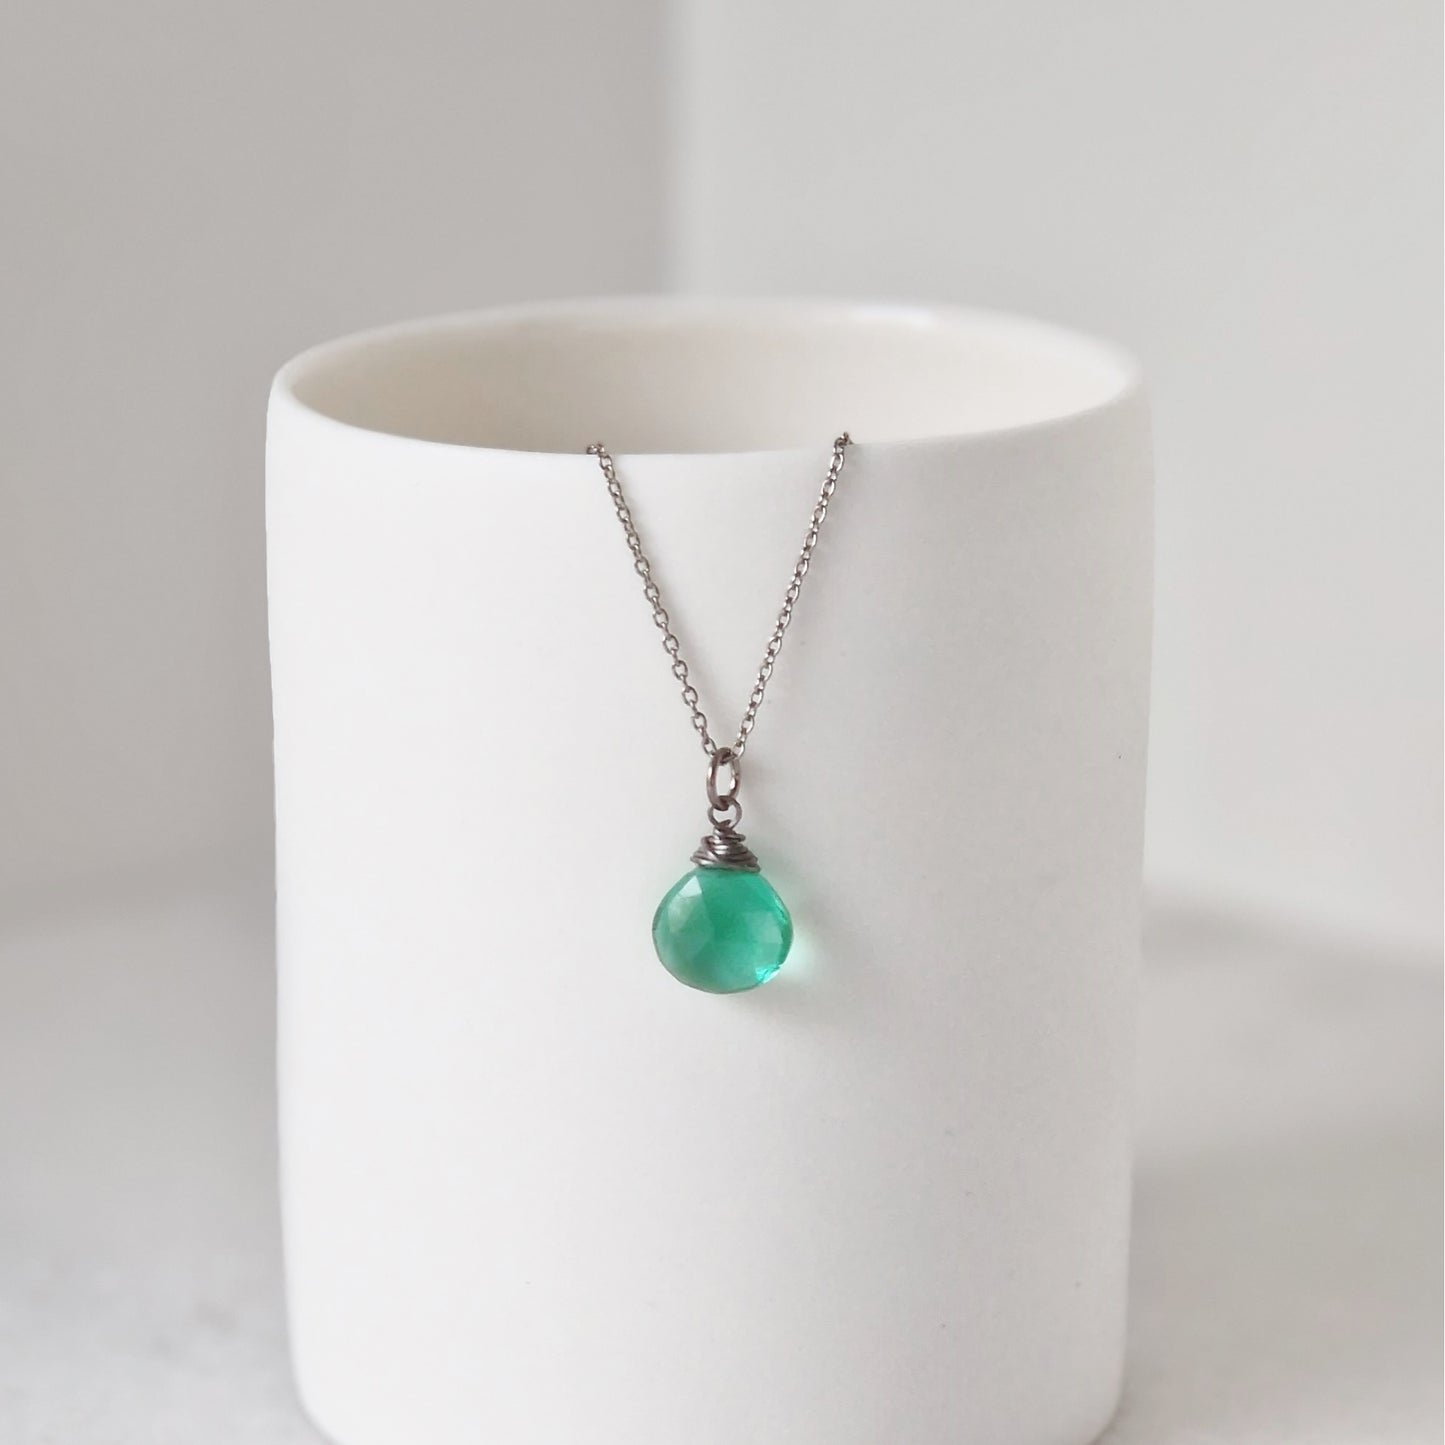 Titanium Necklace with Emerald Green Quartz